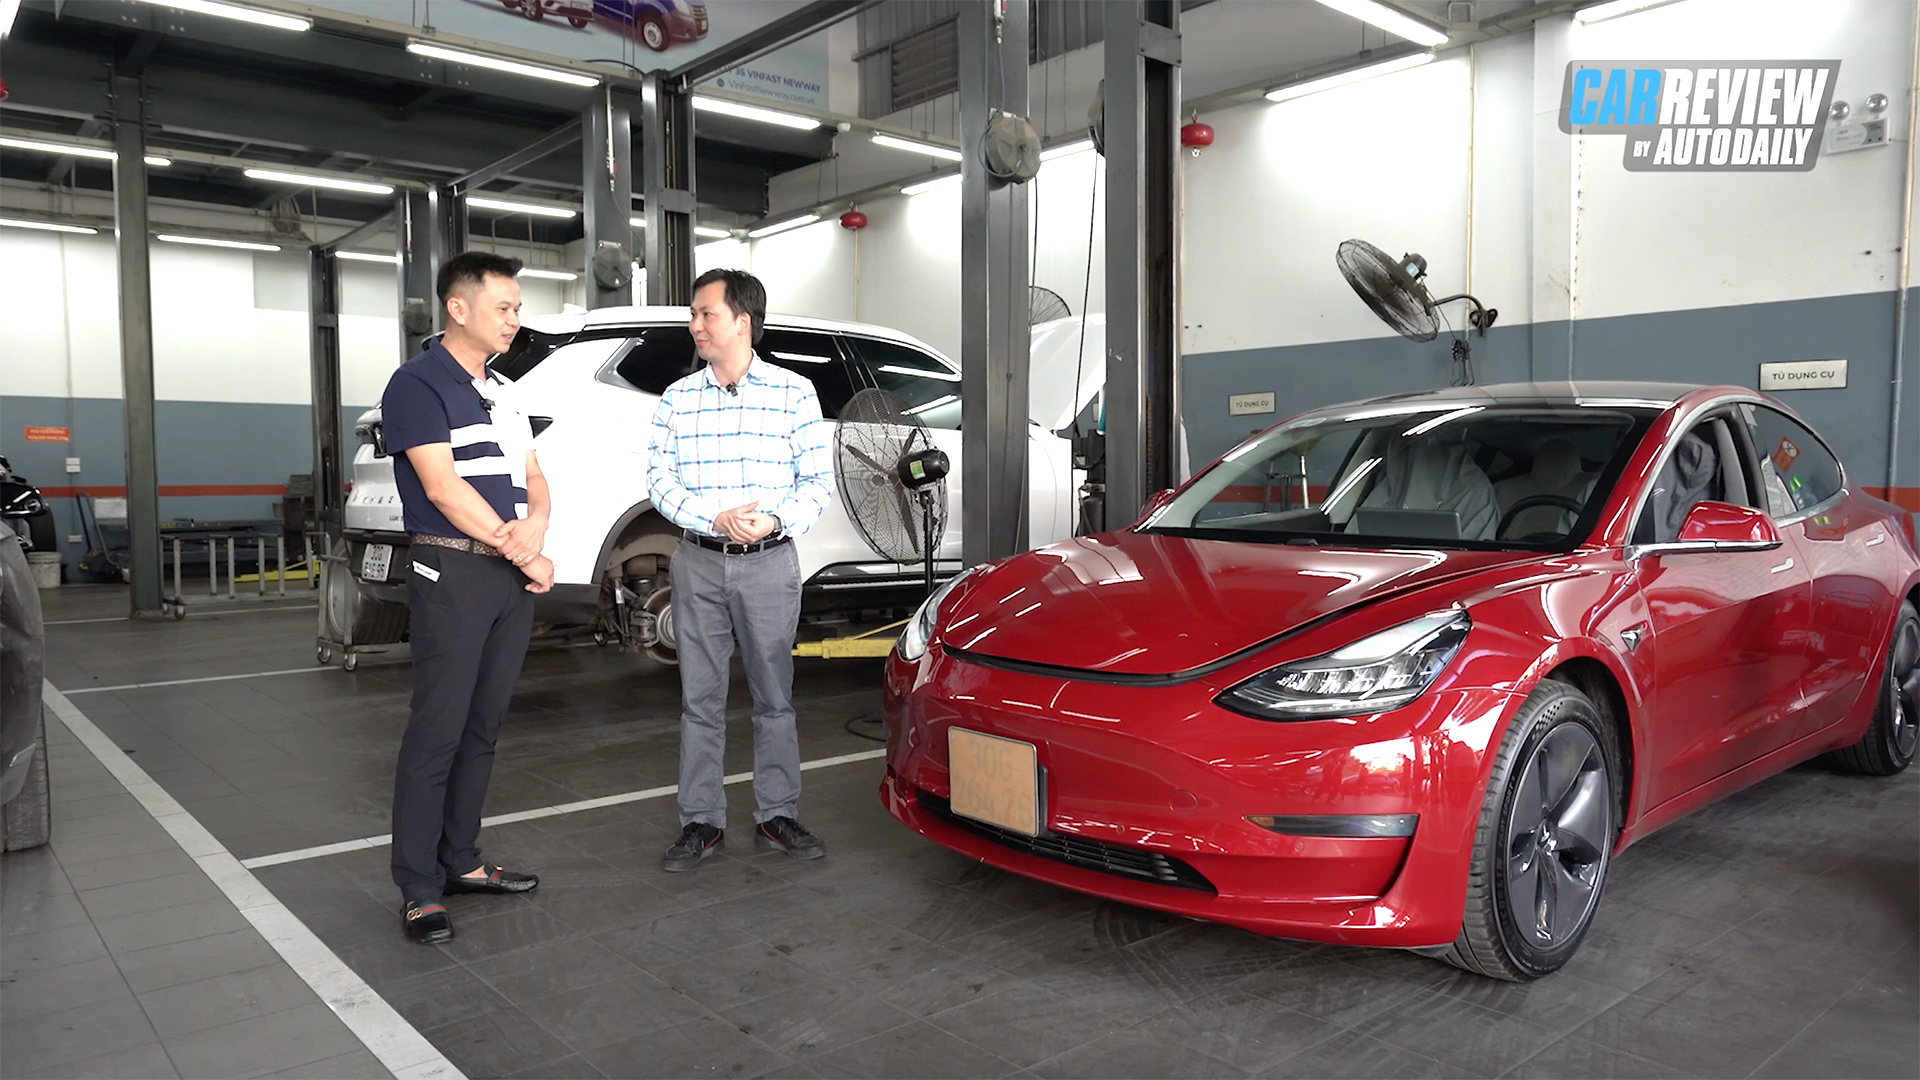 Giải mã hệ thống điều hòa trên xe điện Tesla - Khác biệt thế nào so với xe điện VinFast?